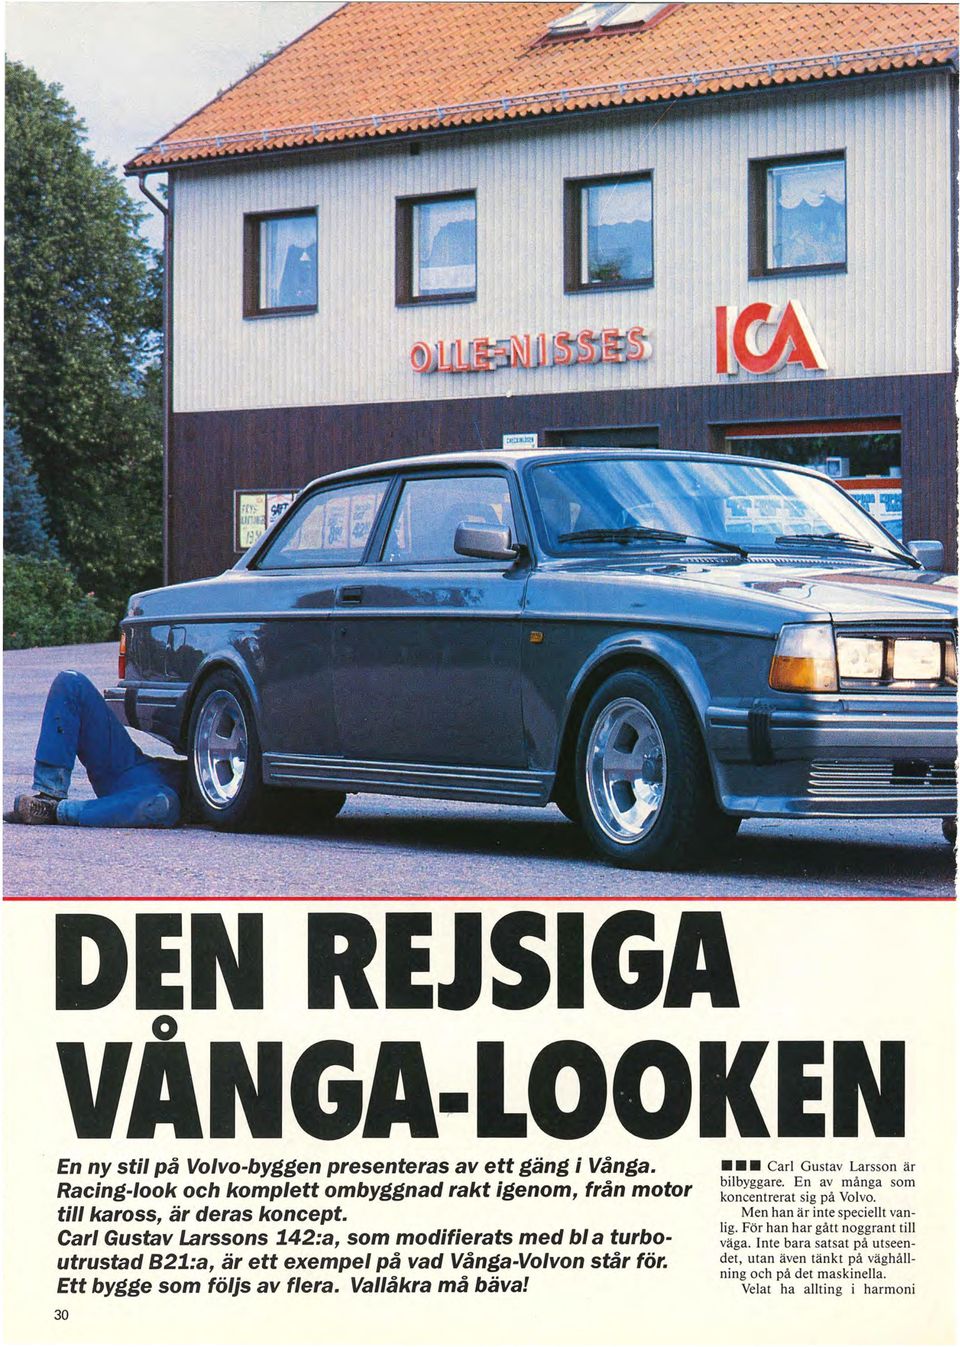 Carl Gustav Larssons 142:a, som modifierats med bl a turboutrustad B21:a, är ett exempel på vad Vånga-Volvon står för.